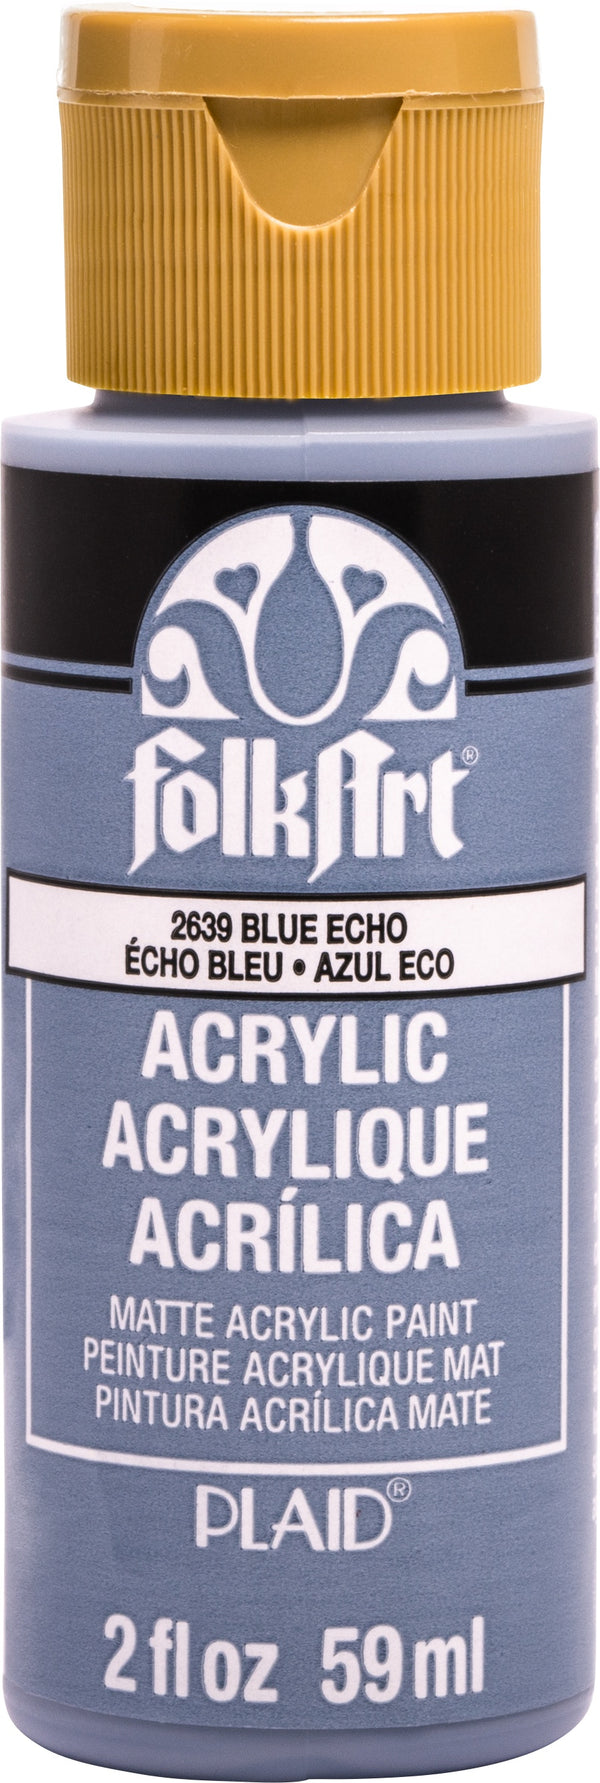 FolkArt Acrylic Paint 2oz - Blue Echo